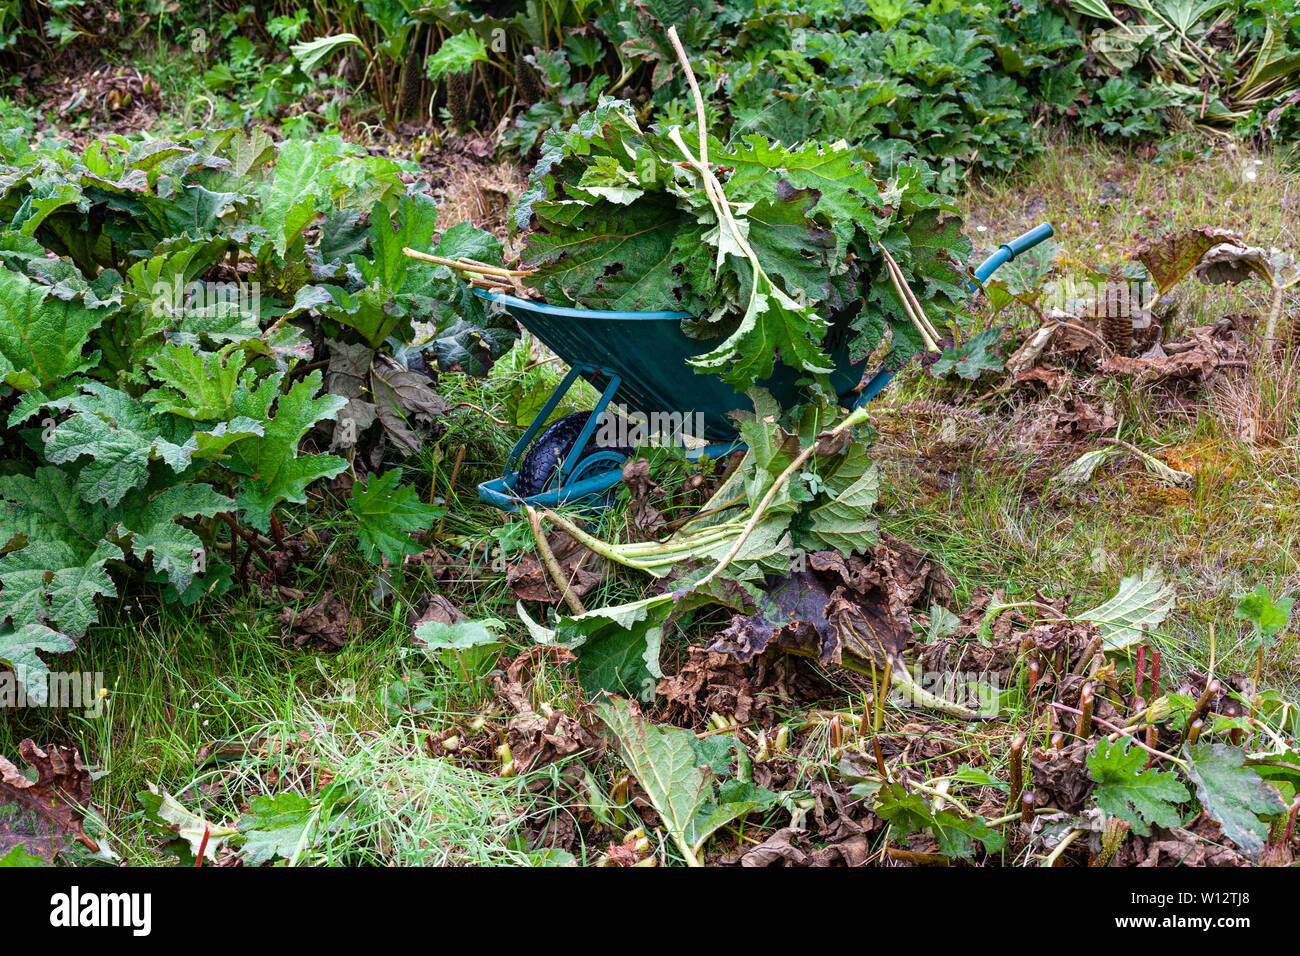 Sarchiatura Gunnera grandi piante in giardino sovradimensionate, nella contea di Kerry, Irlanda Foto Stock